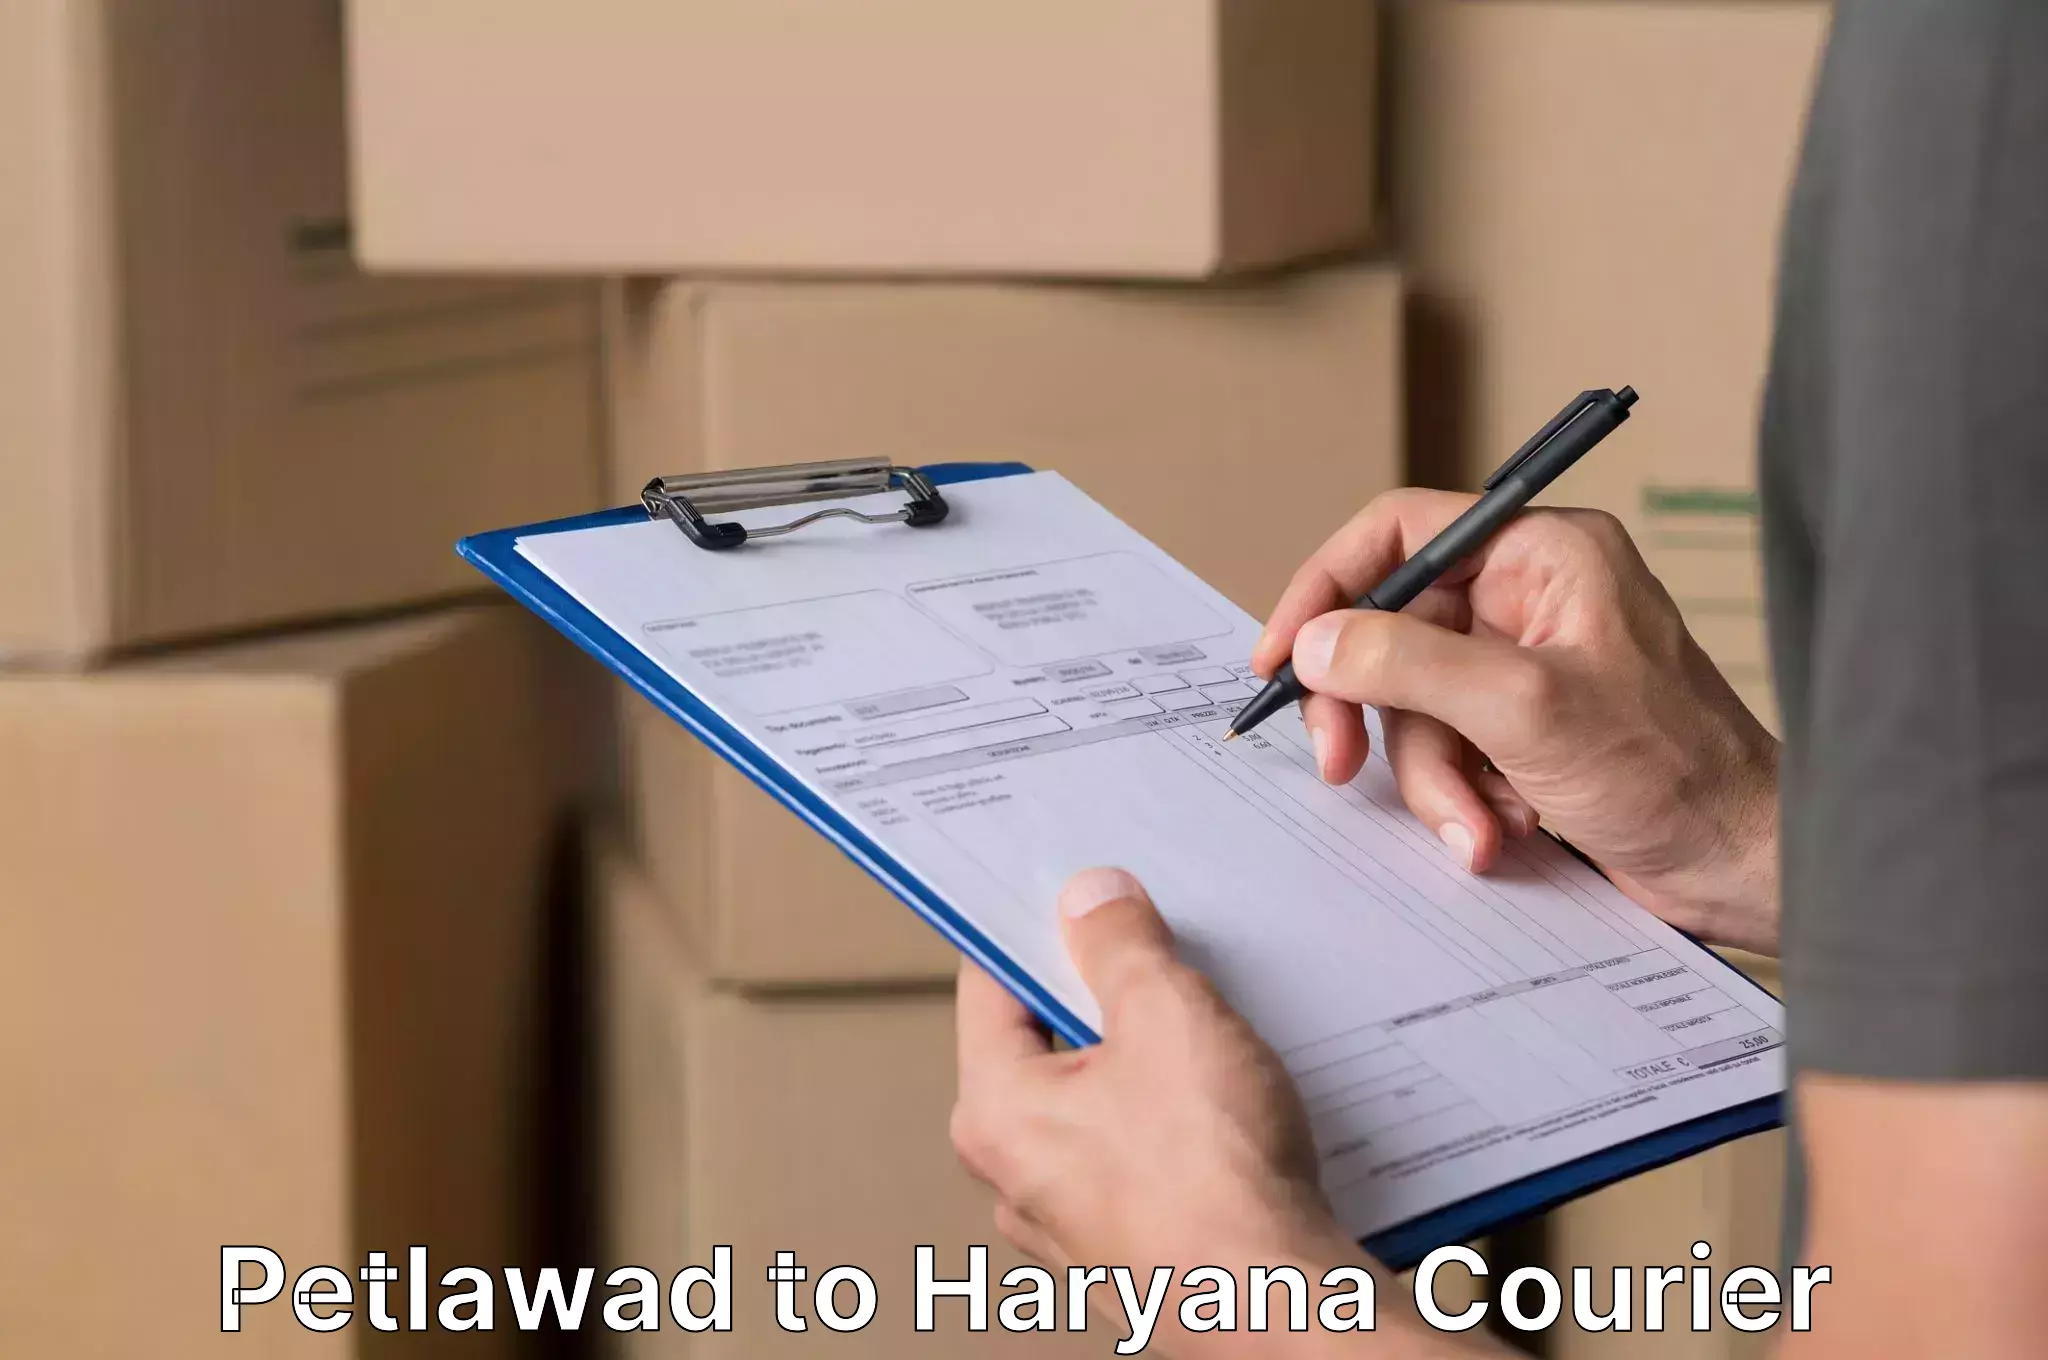 Premium furniture transport in Petlawad to Haryana